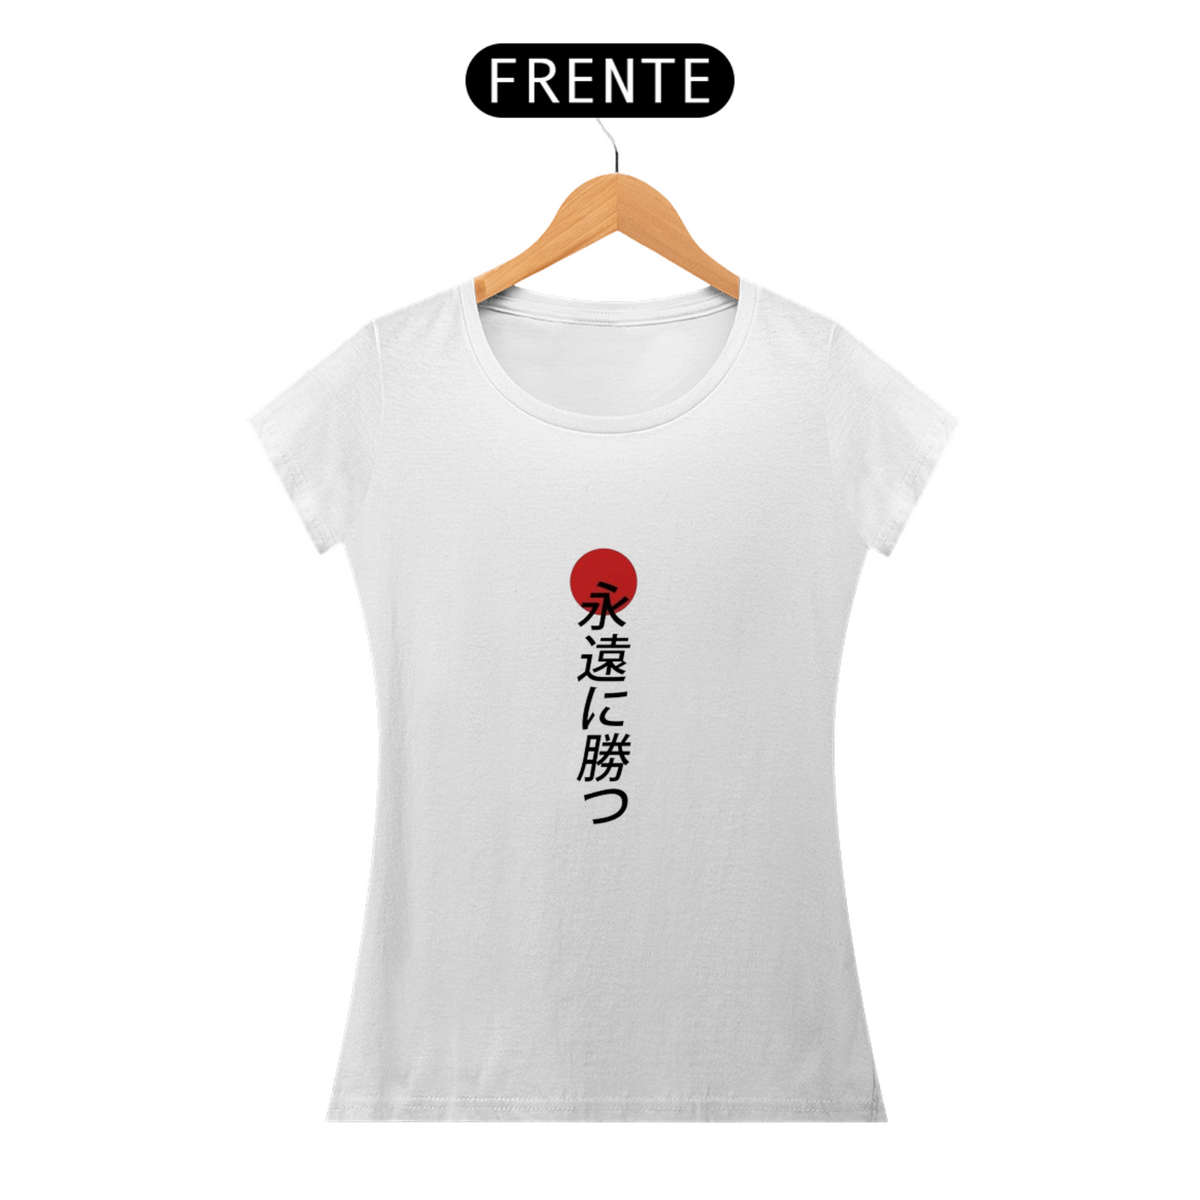 Nome do produto: Camiseta masculina arte japonesa com escritas 